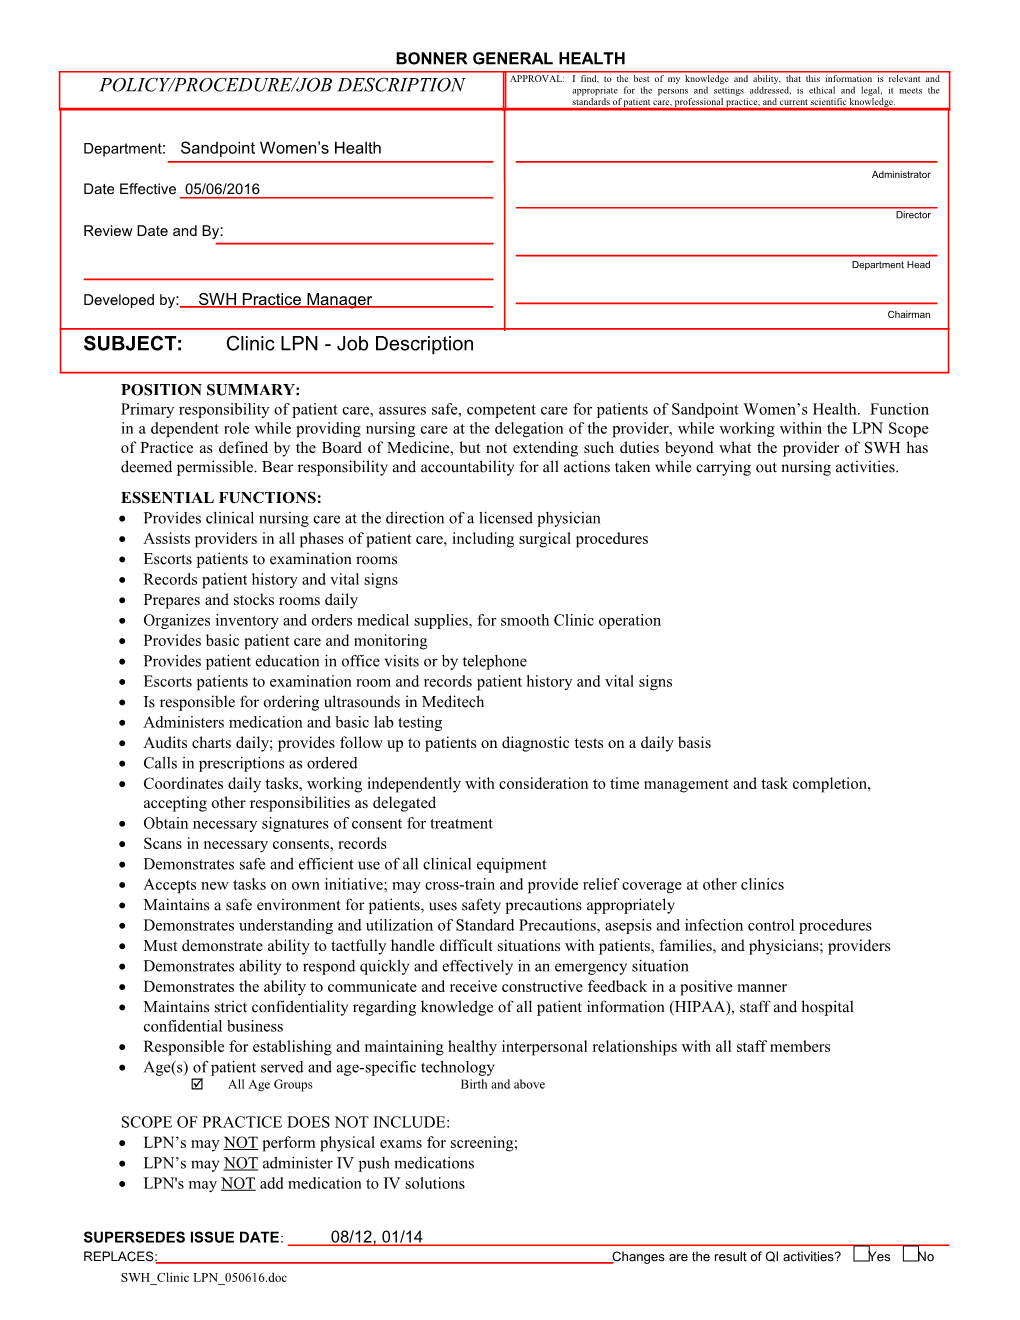 Subject:Clinic LPN - Job Description